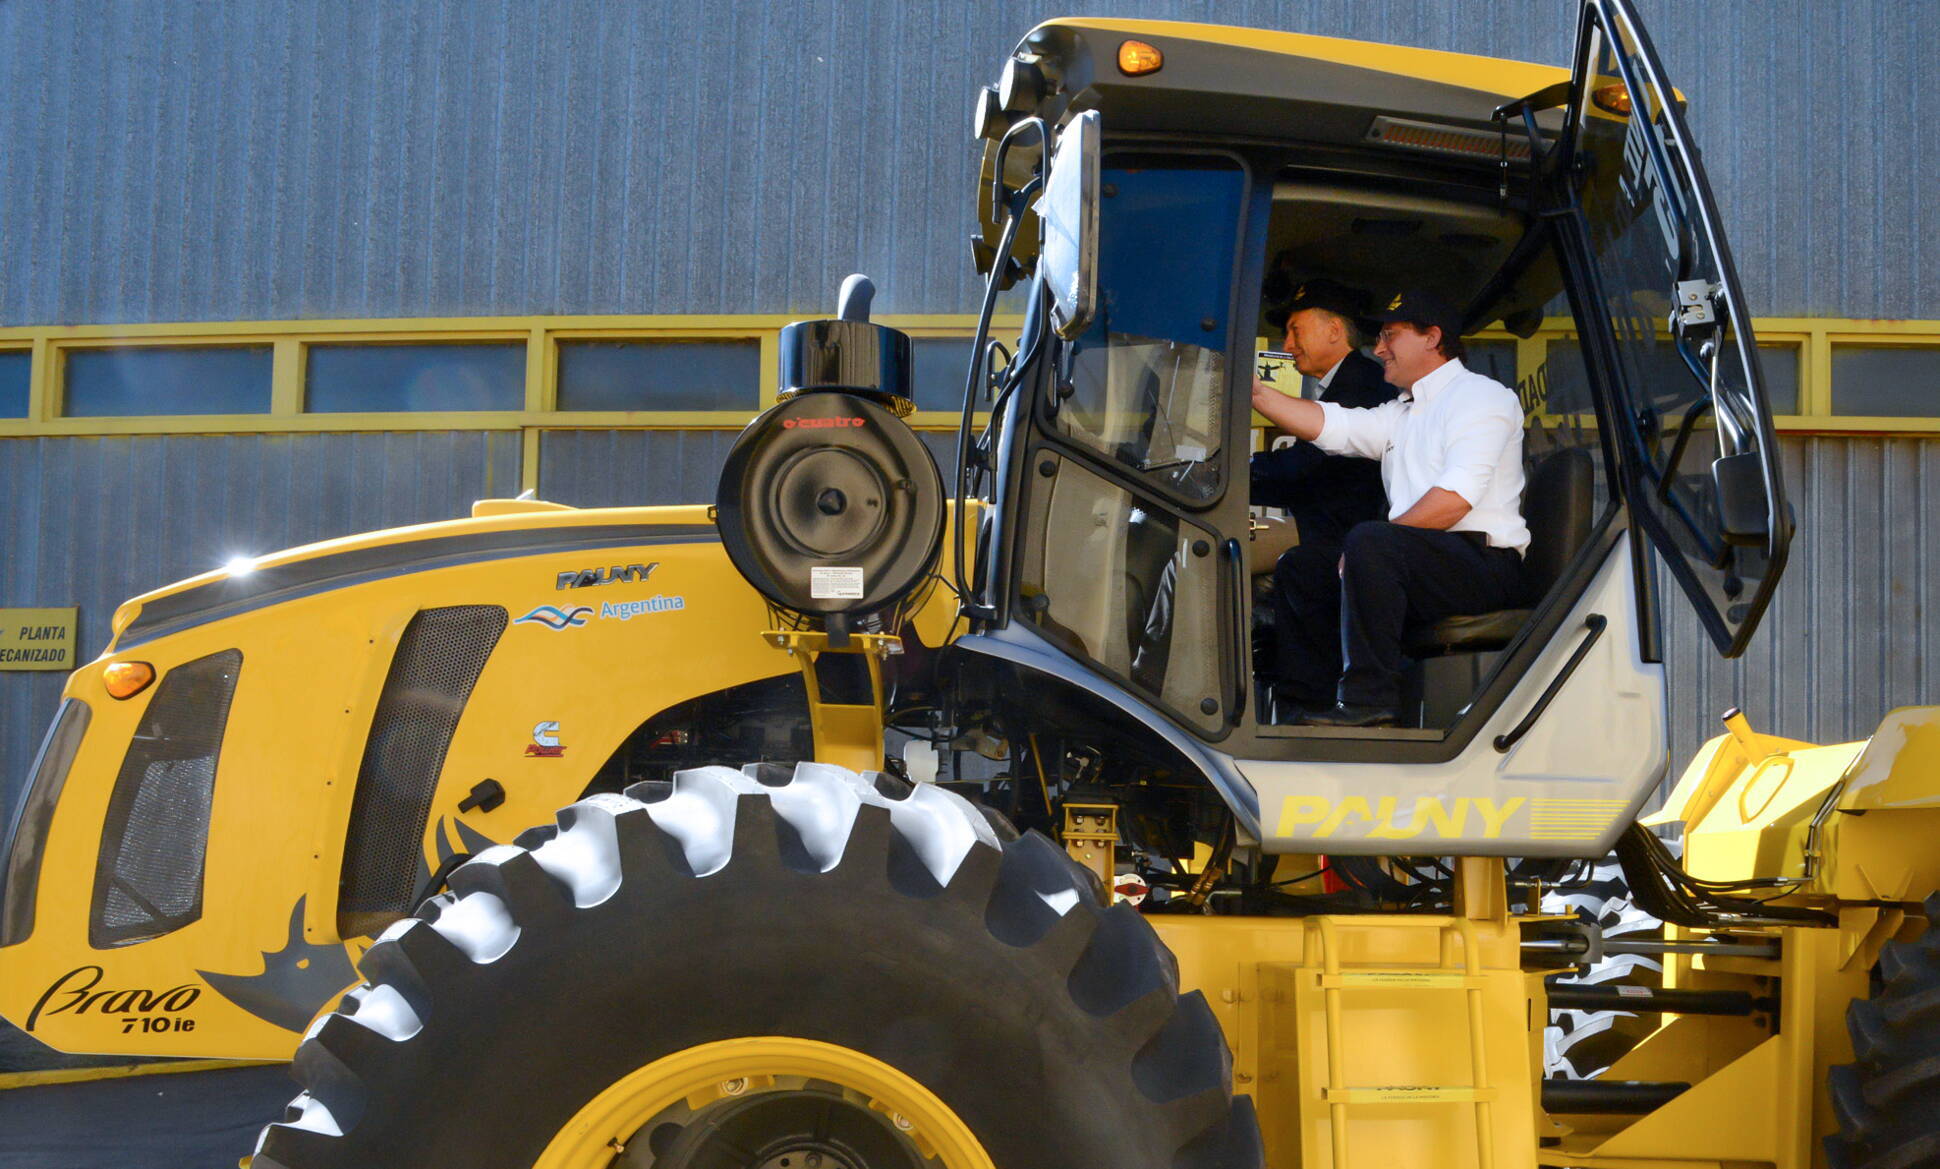 El Presidente visitó una empresa productora de maquinaria agrícola en Córdoba